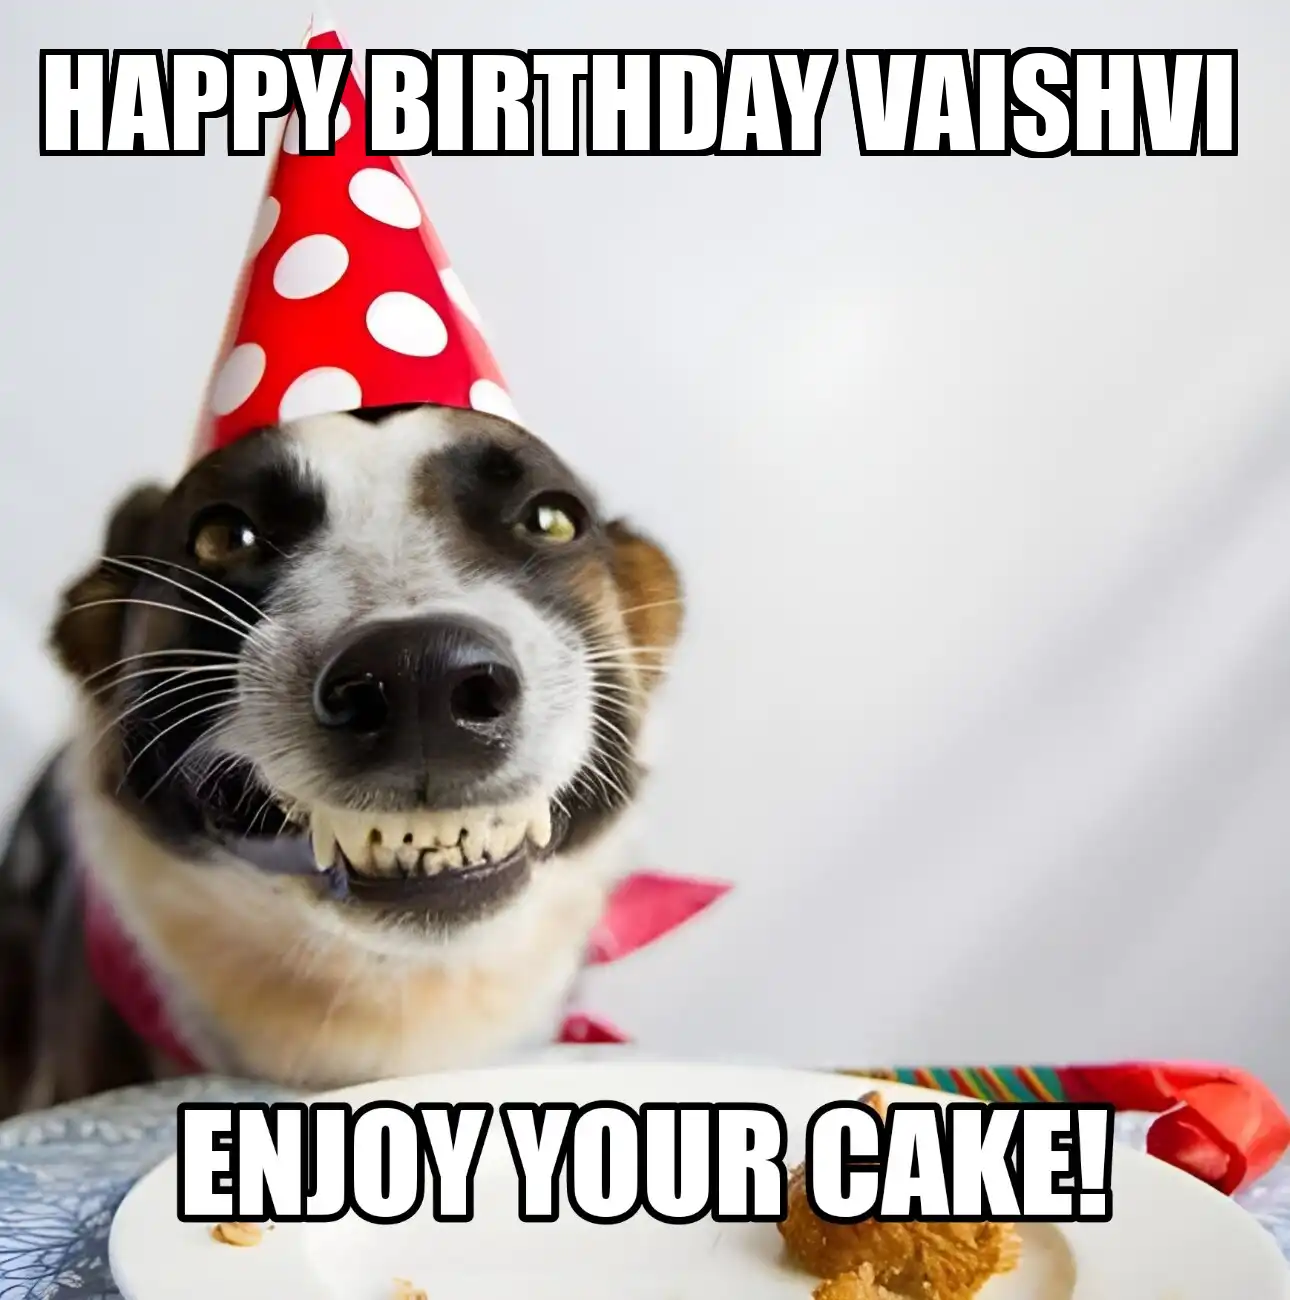 Happy Birthday Vaishvi Enjoy Your Cake Dog Meme